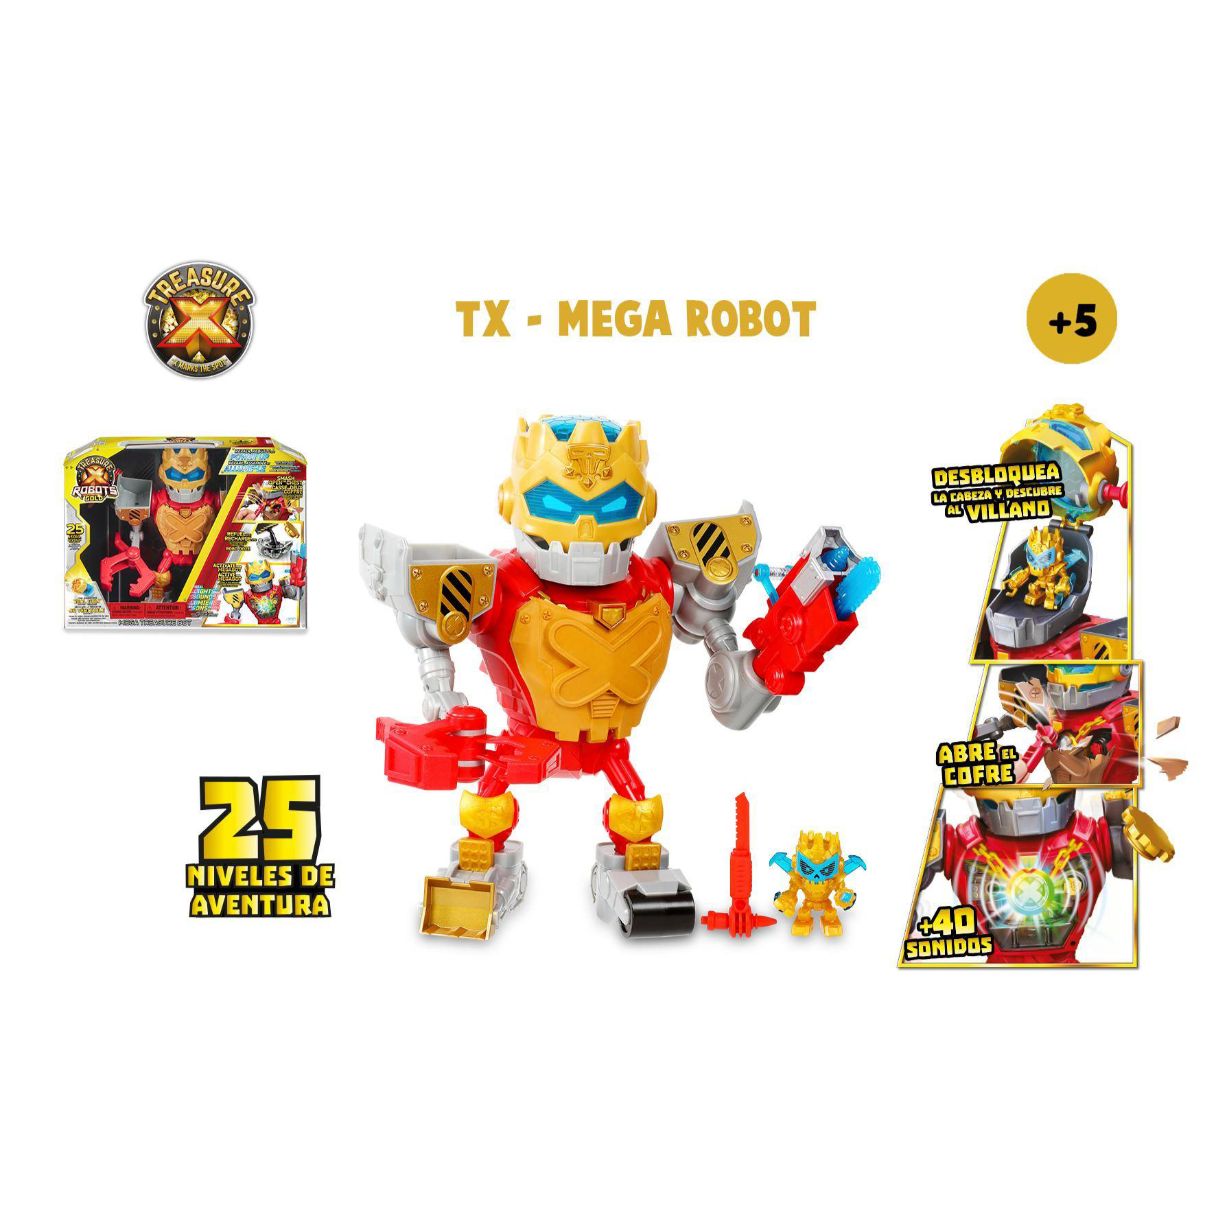 treasure x - mega robot, juguete con más de 25 niveles de aventura, sonidos, música y luces, encuentra piezas para montarlo, des